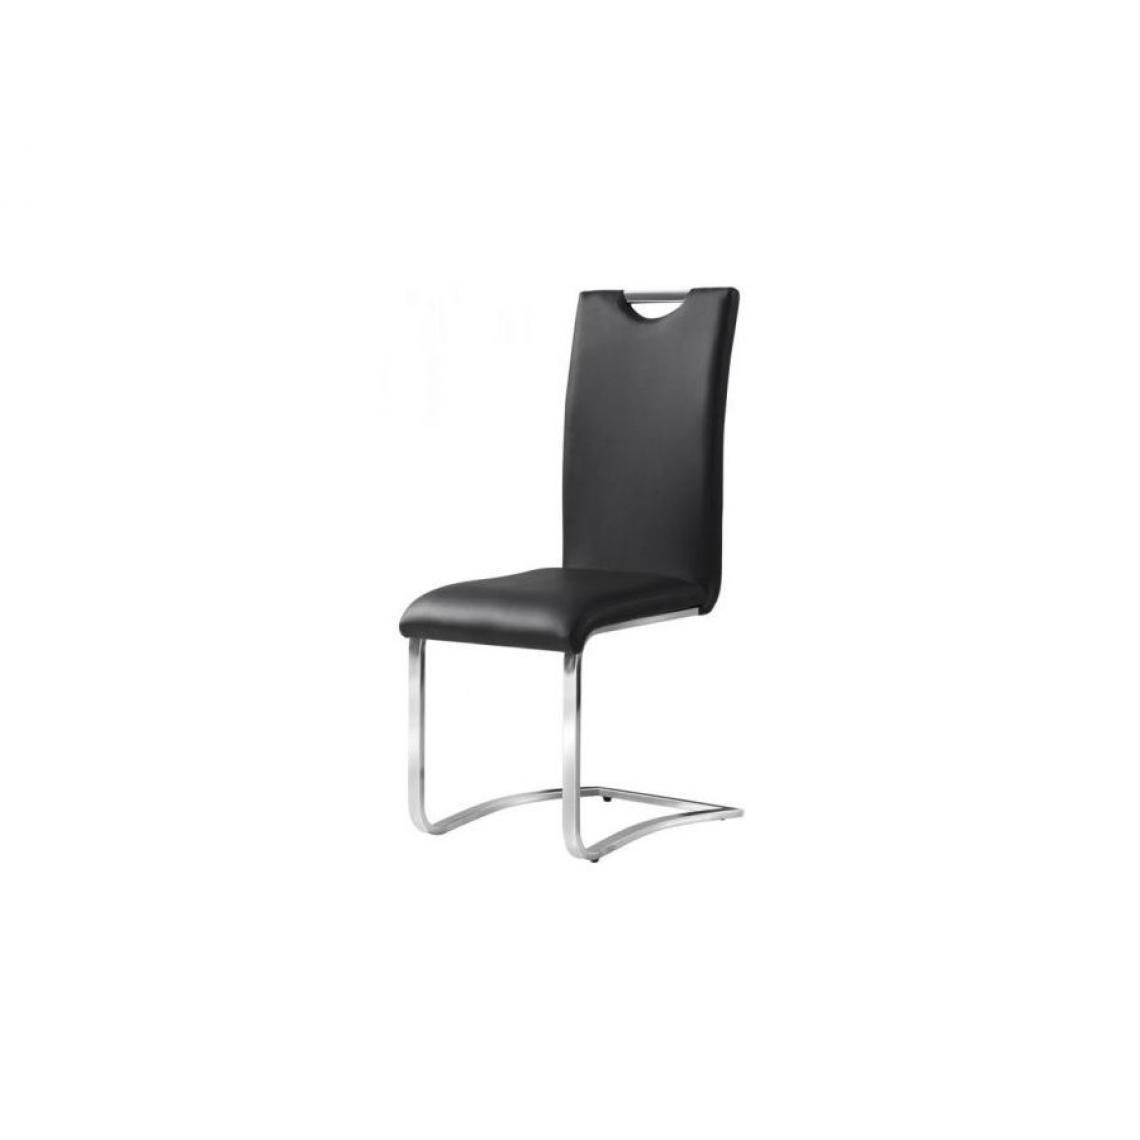 Hucoco - CORI | Chaise moderne cuir écologique | Dimensions : 101x42x43 cm | Salle à manger salon bureau modernes | Design ergonomique - Noir - Chaises